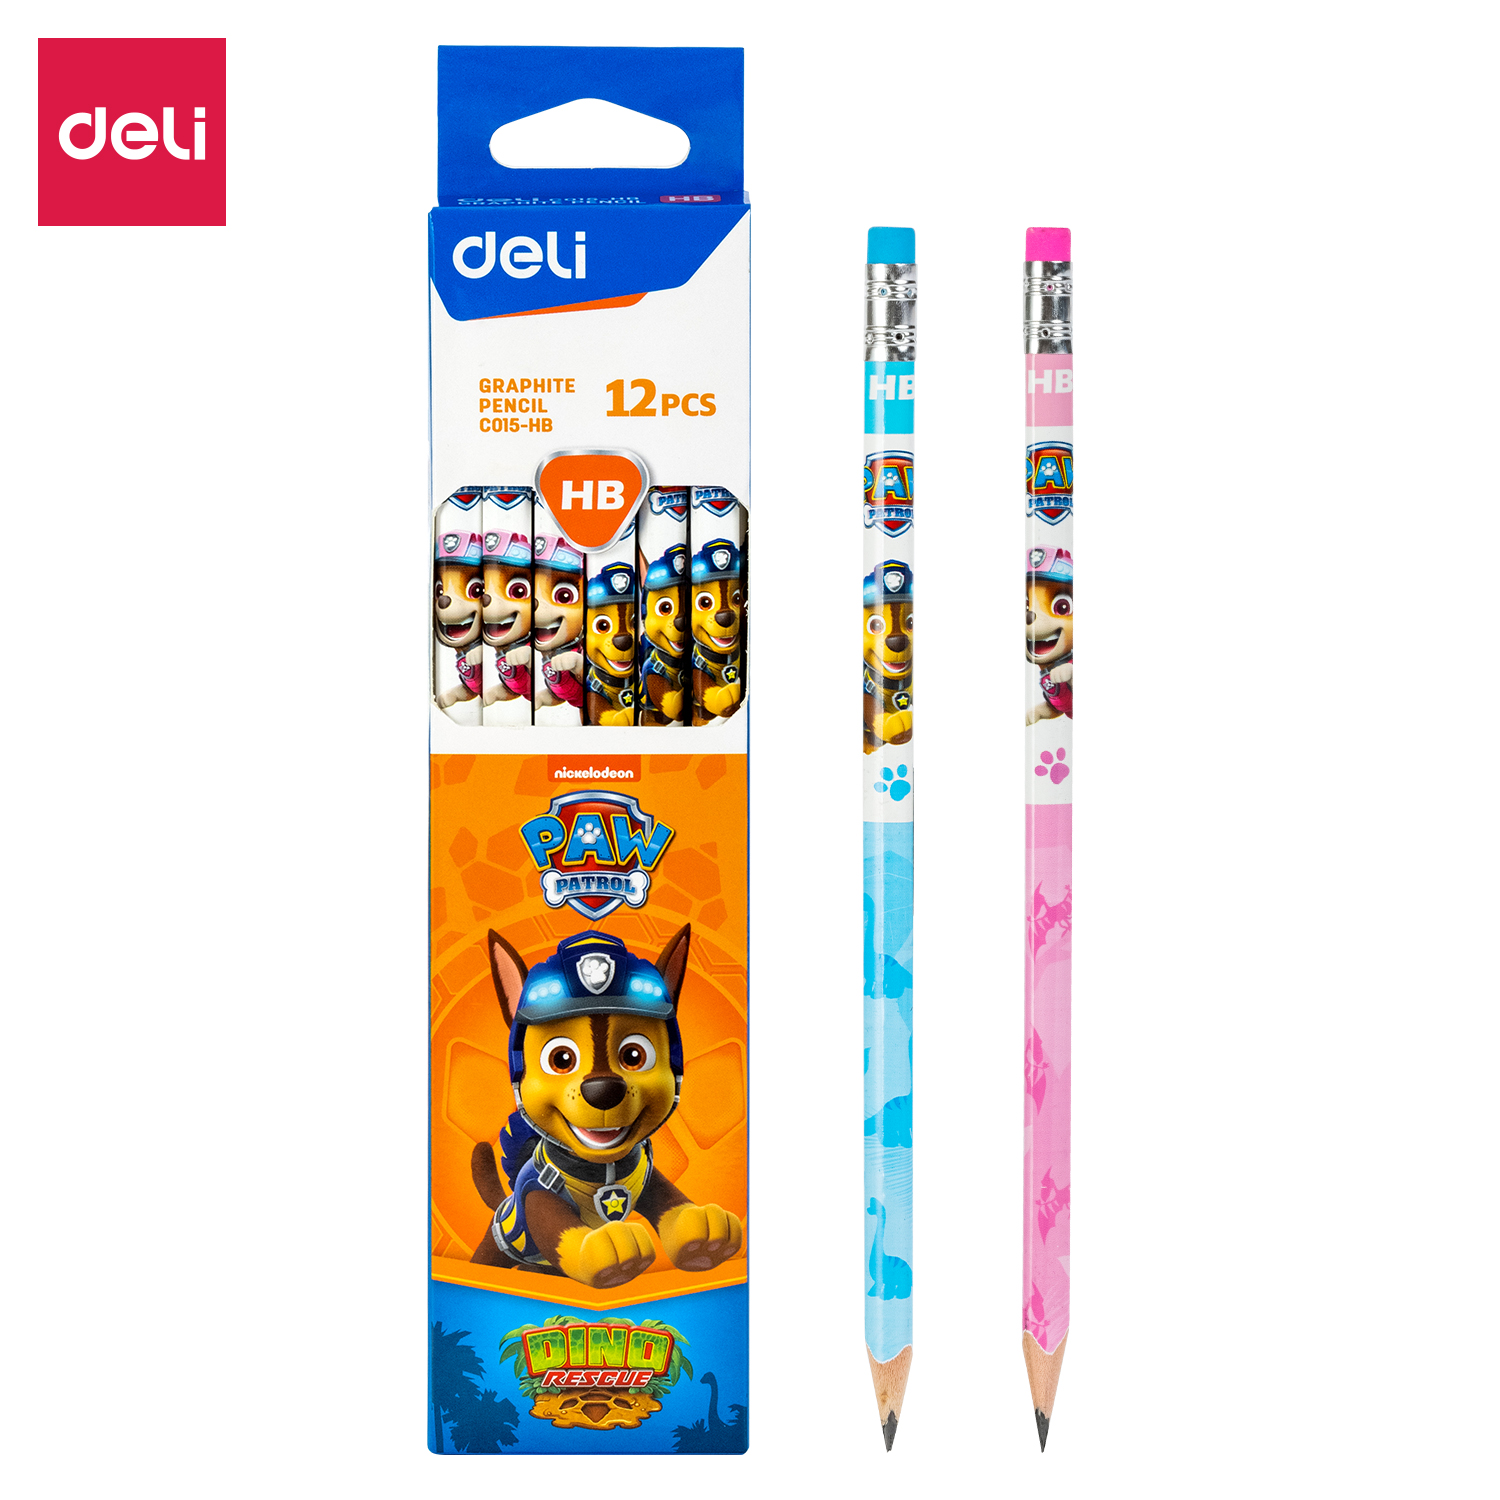 Deli-EC015-HB Graphite Pencil